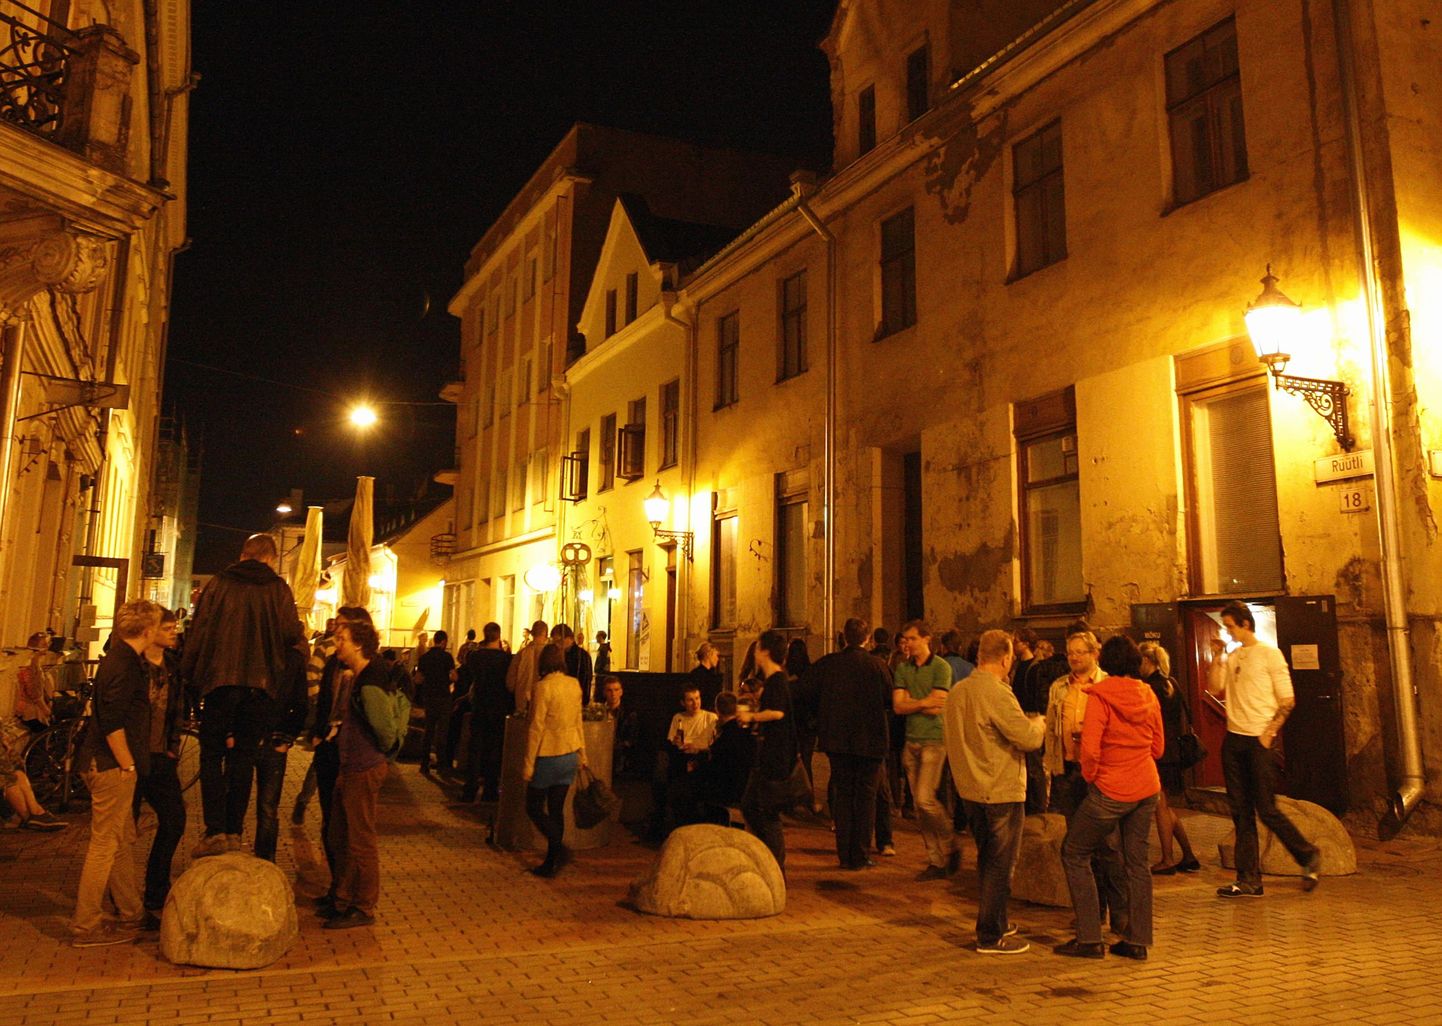 Järgmisest nädalast võivad Tartus asuvat Rüütli tänavat öösiti jälle täita pidu nautivad tudengimassid. Foto on tehtud 2013. aasta maikuus.